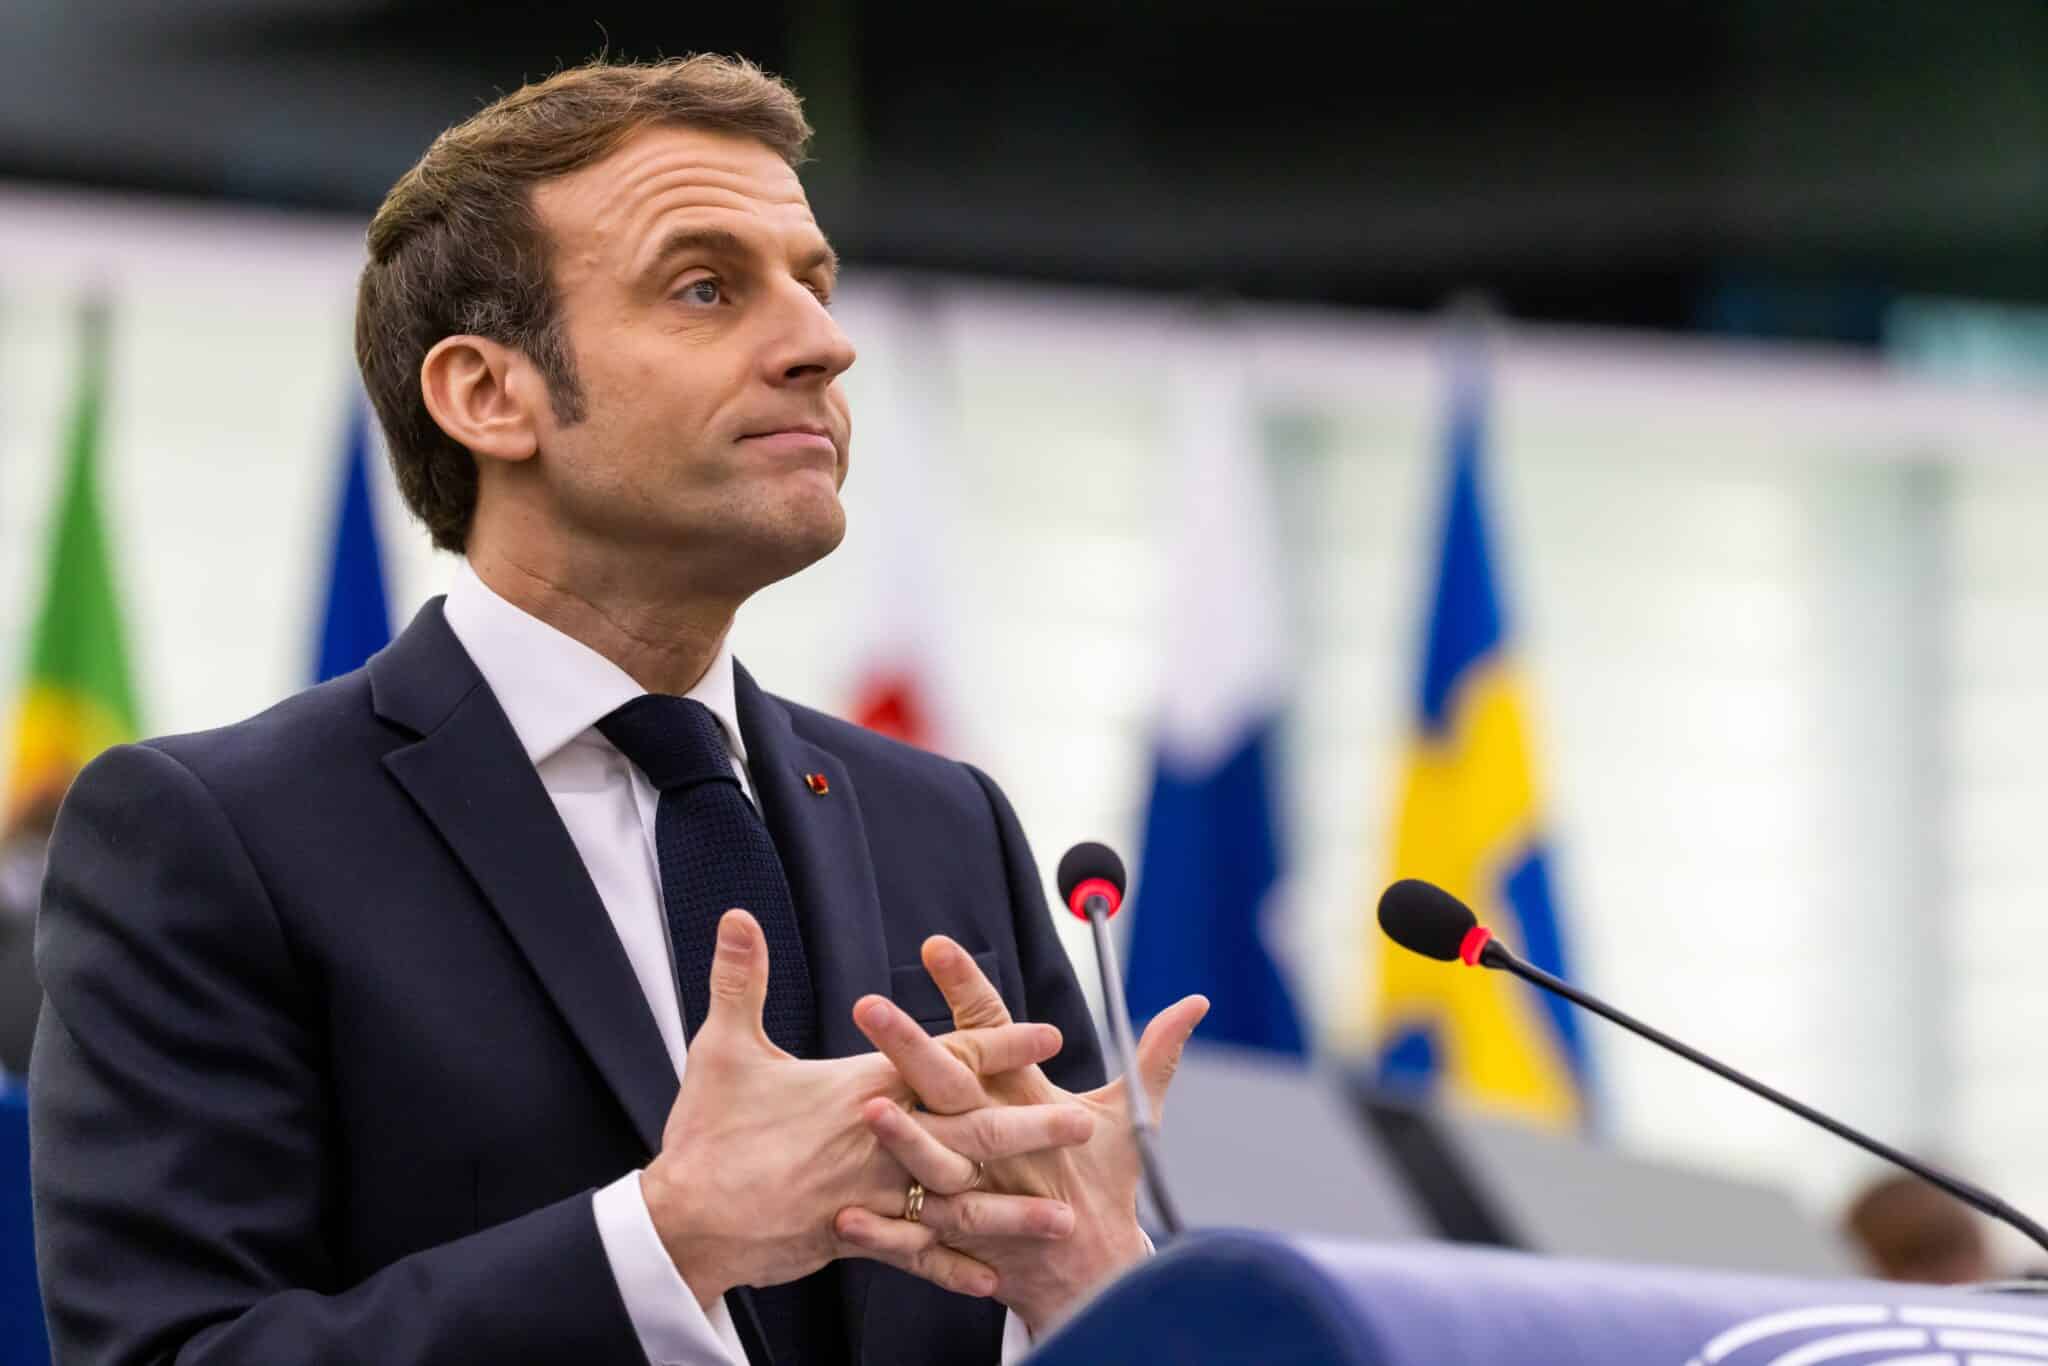 El presidente francés, Emmanule Macron, pronuncia un discurso en la sala plenaria del edificio del Parlamento Europeo durante una sesión plenaria